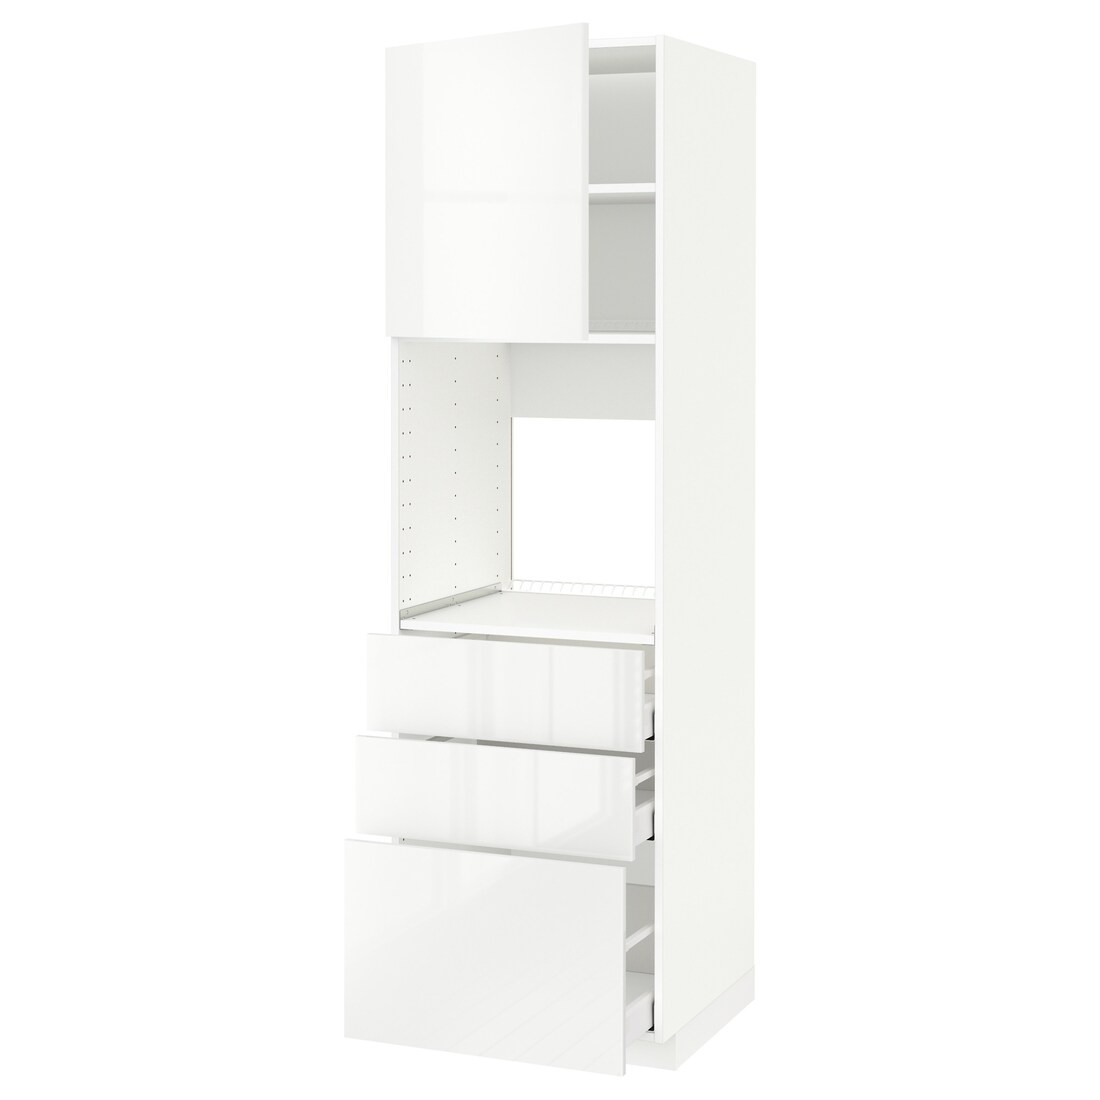 METOD МЕТОД / MAXIMERA МАКСИМЕРА Высокий шкаф для духовки, белый / Ringhult белый, 60x60x200 см